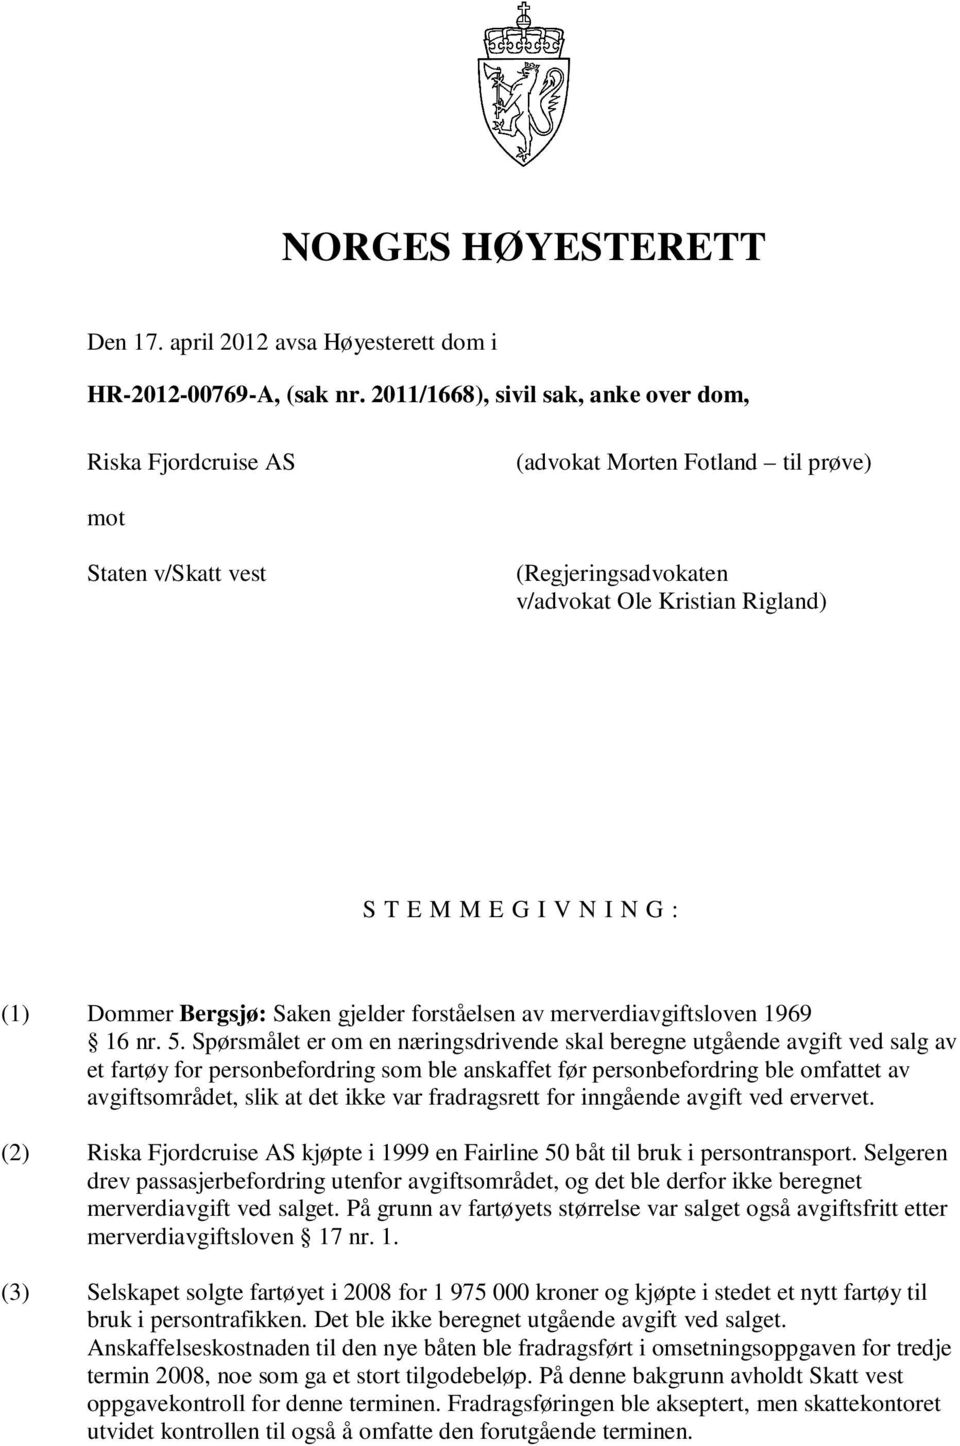 (1) Dommer Bergsjø: Saken gjelder forståelsen av merverdiavgiftsloven 1969 16 nr. 5.